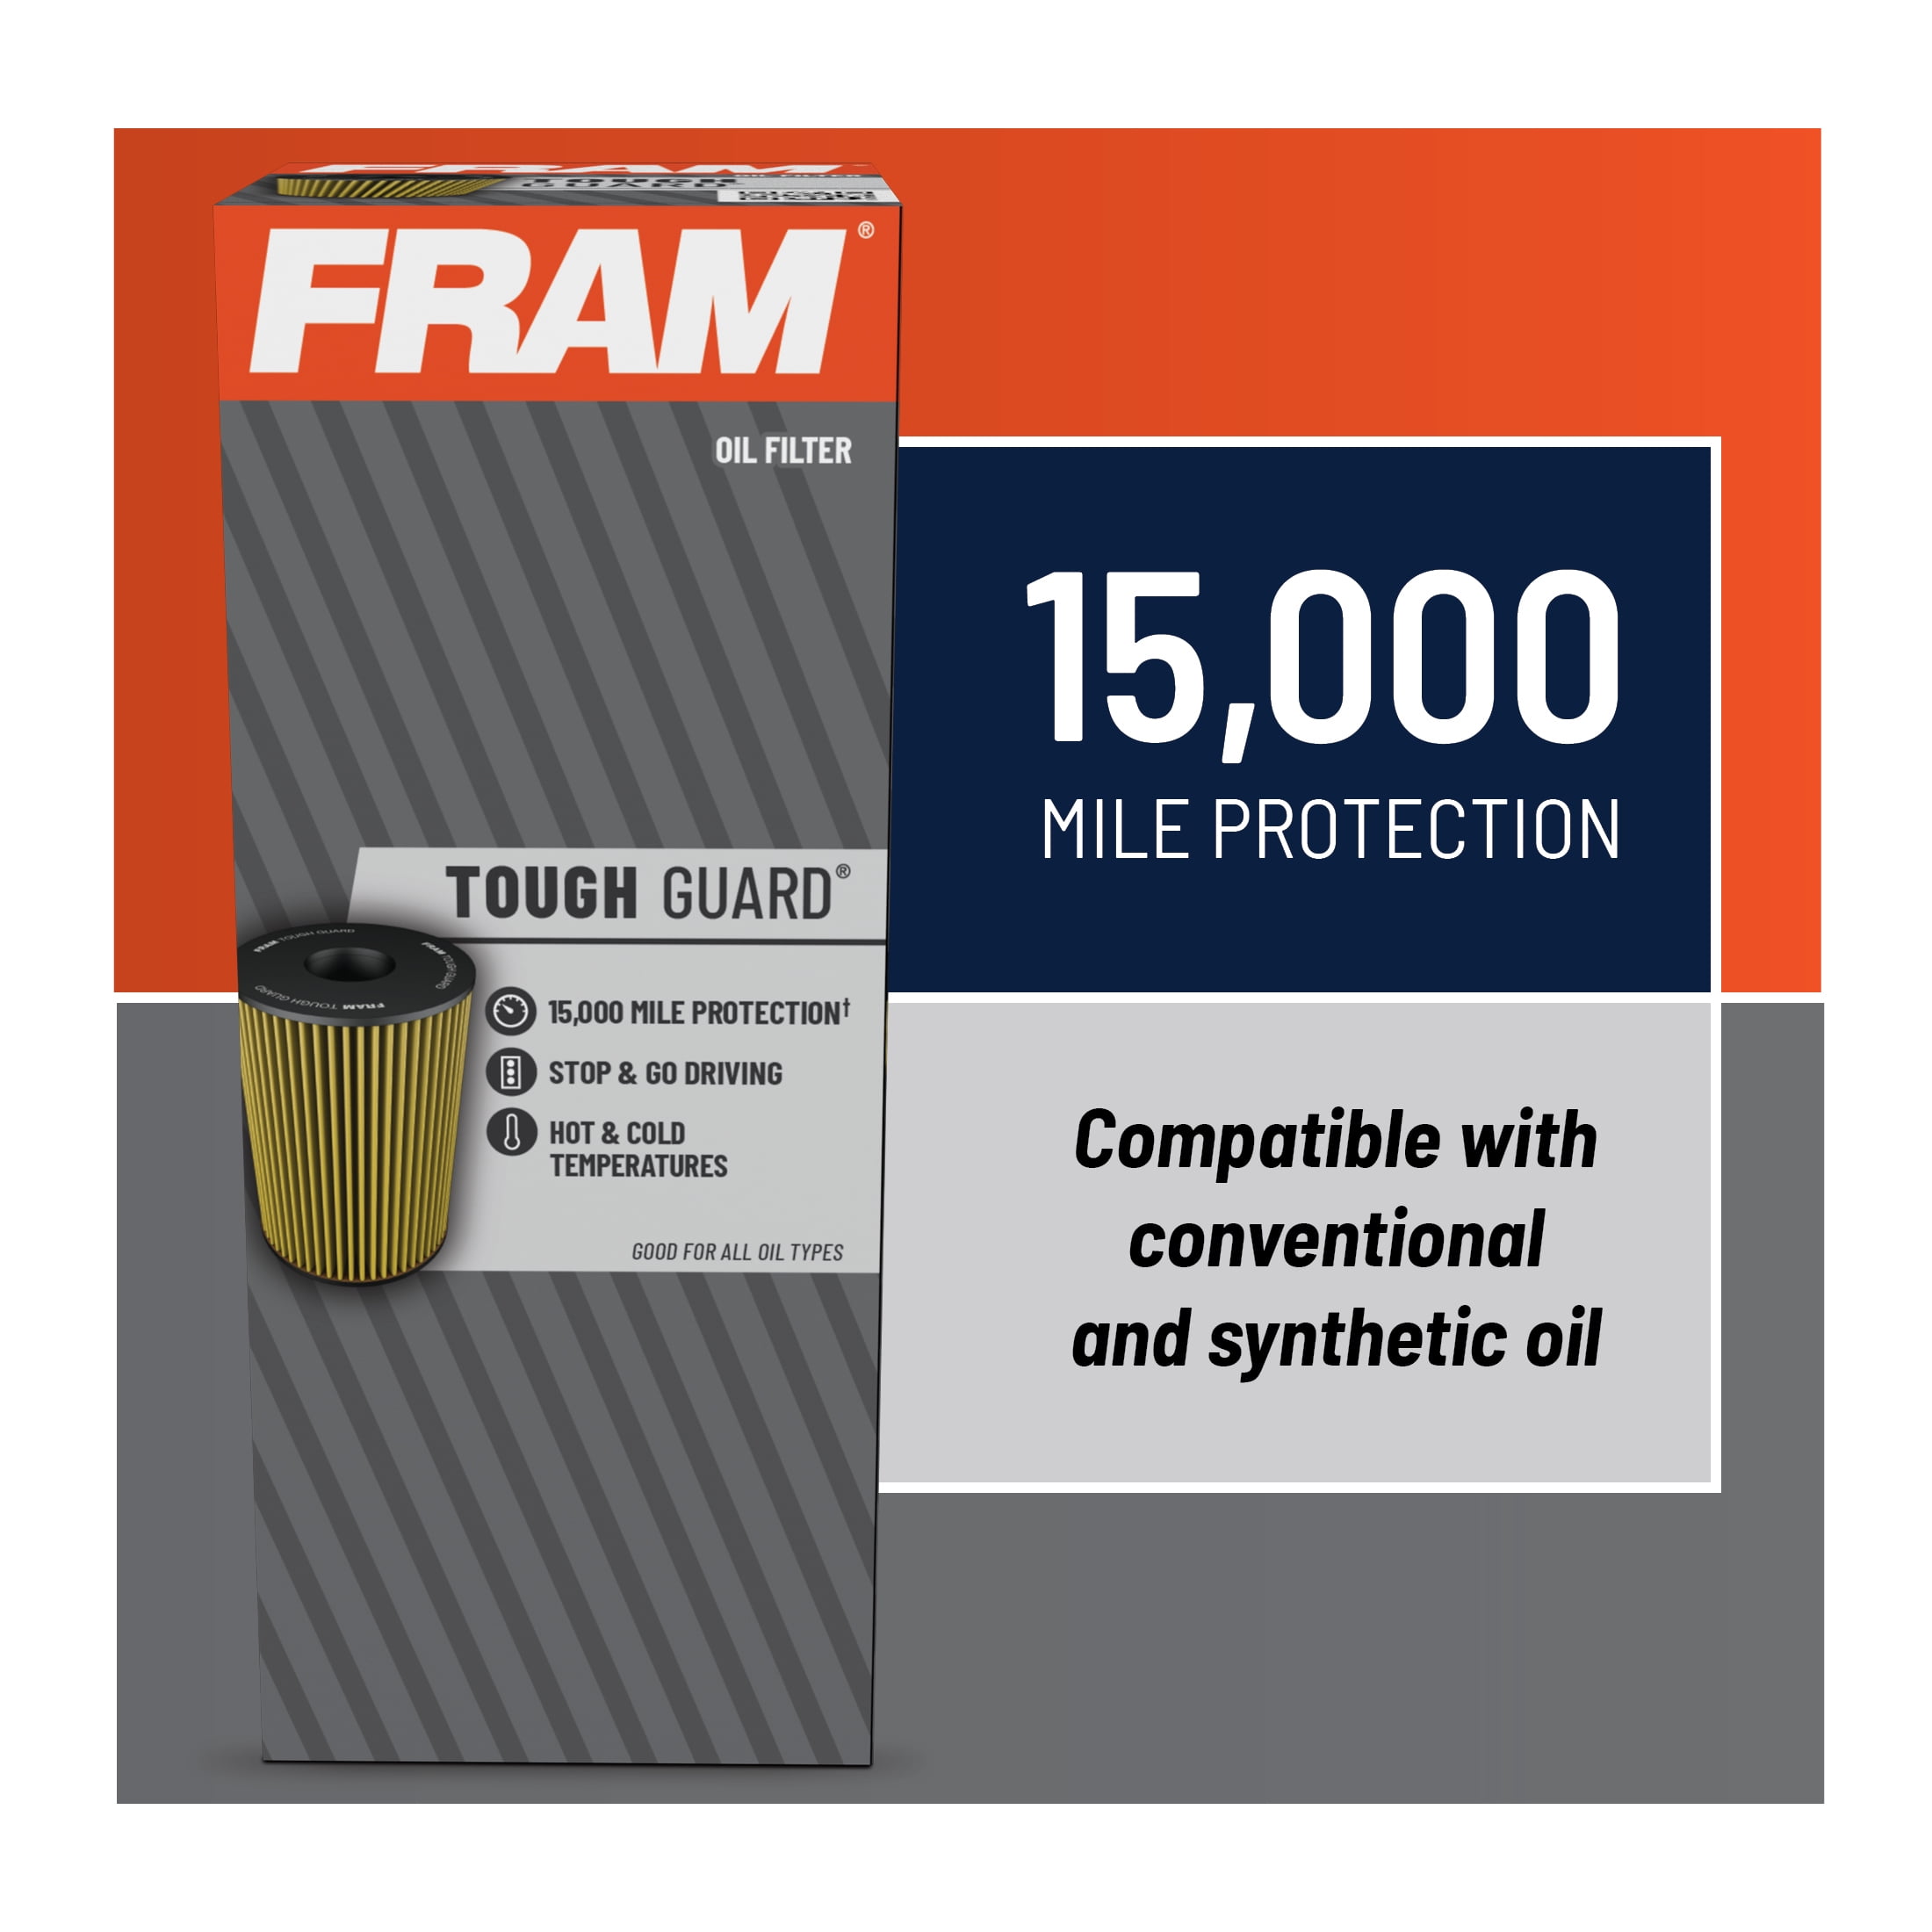 FRAM Tough Guard Filter TG10358, 15K mile Change Interval Oil Filter